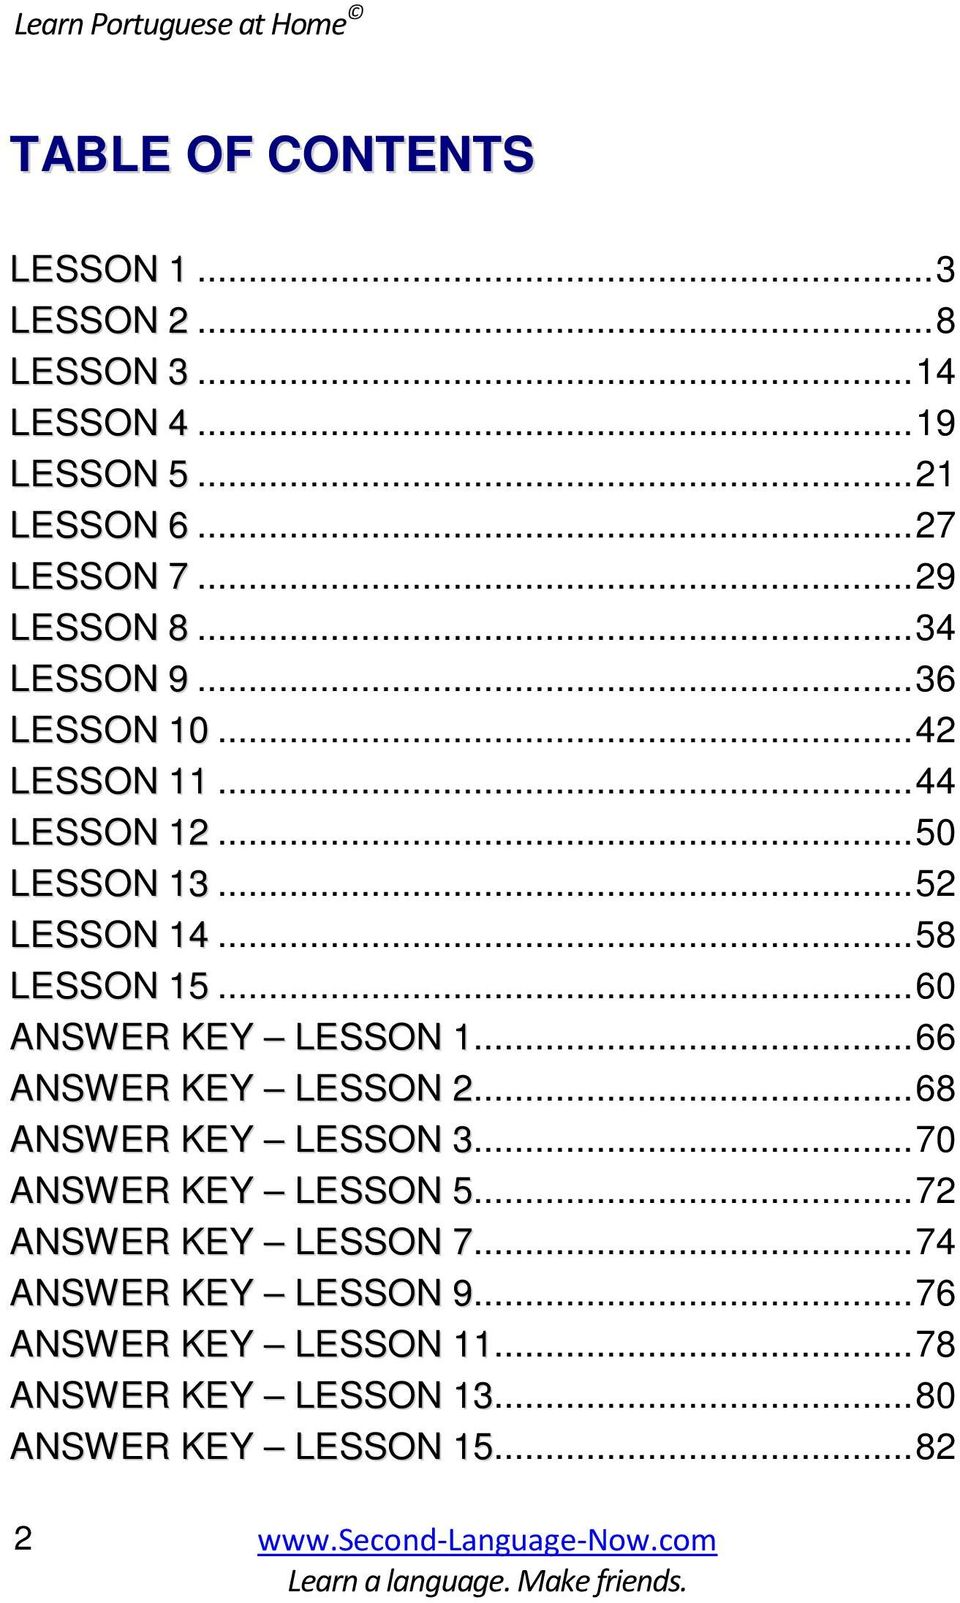 ..58 LESSON 15...60 ANSWER KEY LESSON 1...66 ANSWER KEY LESSON 2...68 ANSWER KEY LESSON 3...70 ANSWER KEY LESSON 5.